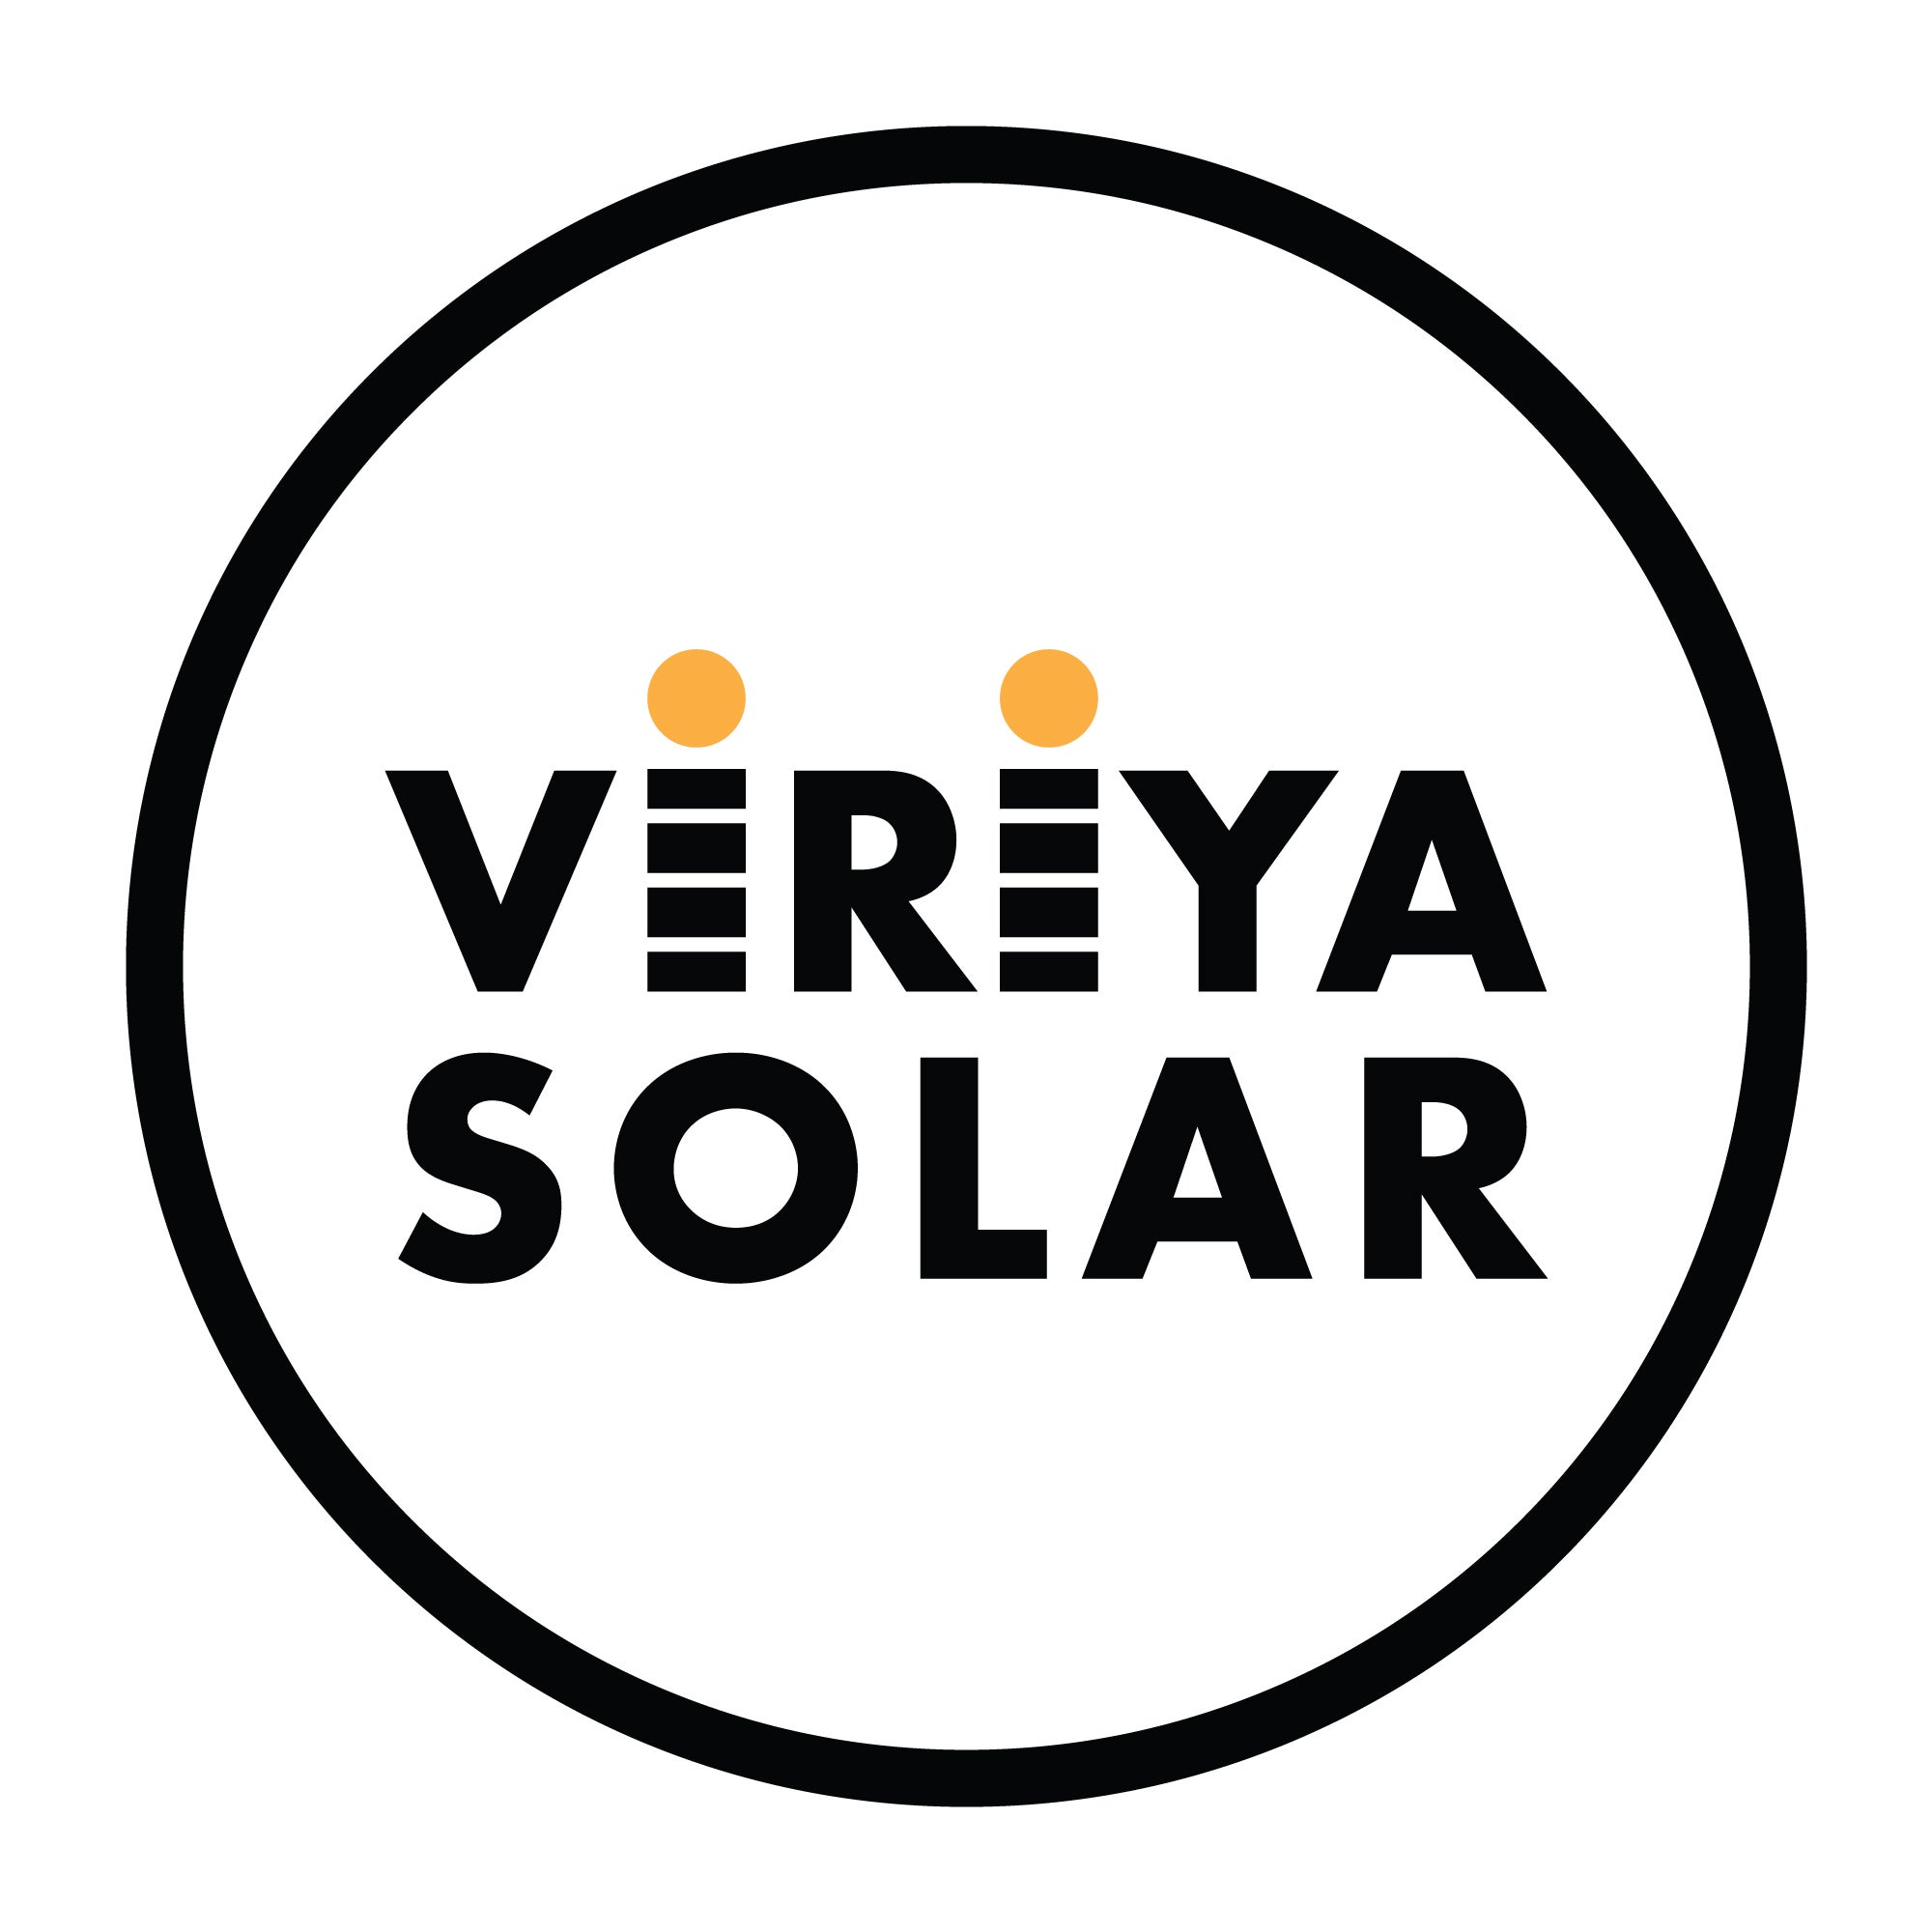 Viriya Solar logo